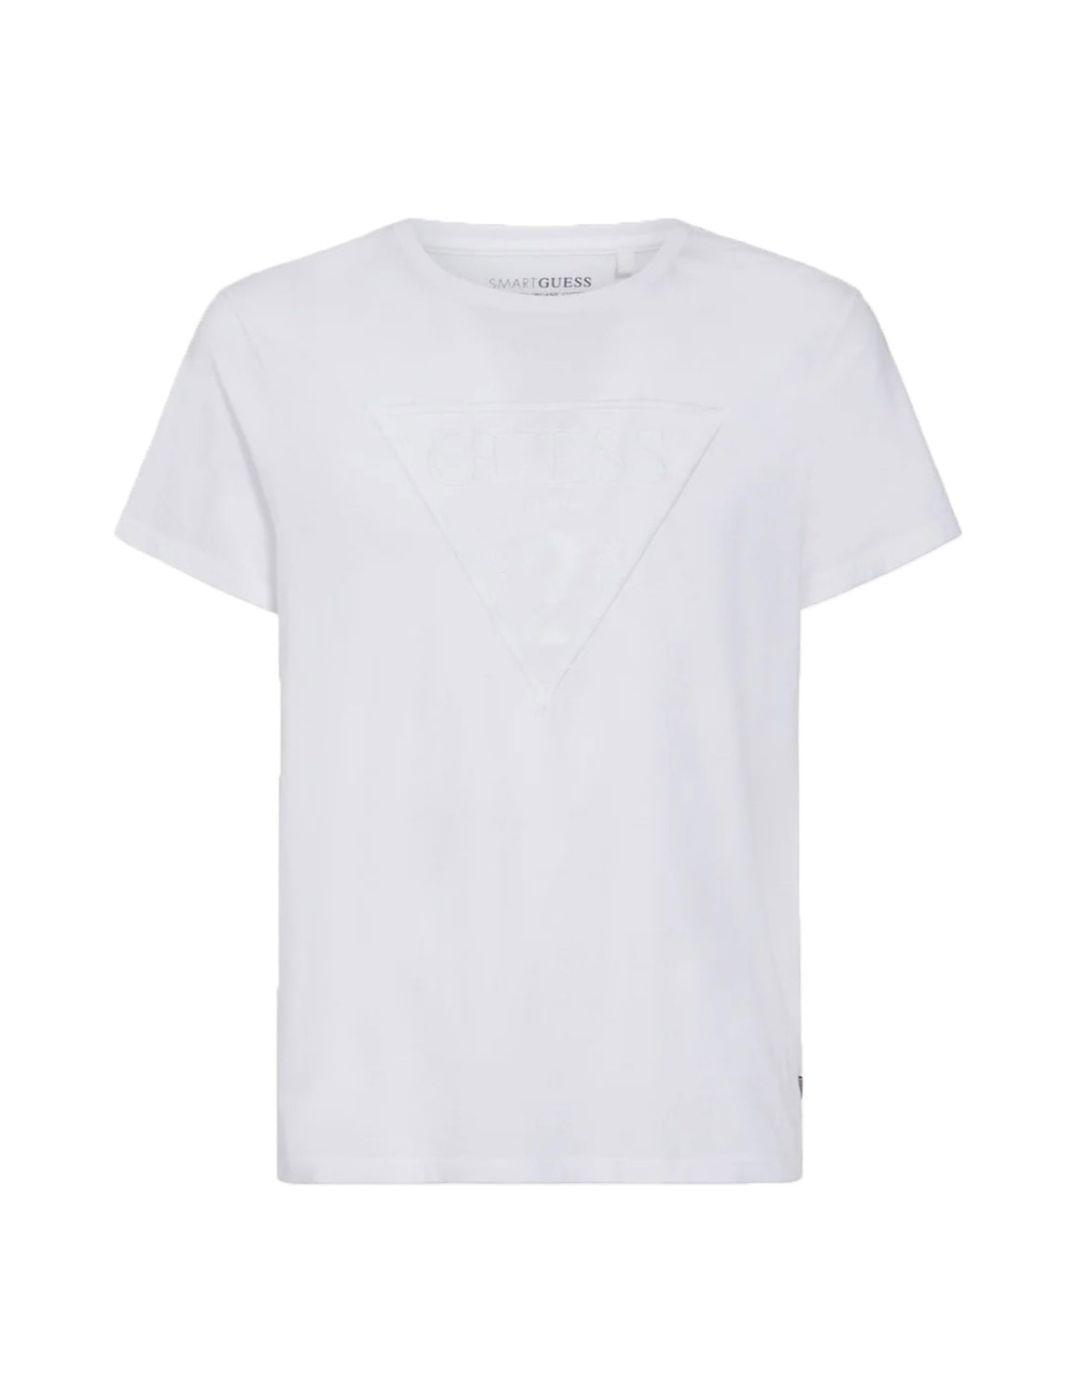 Camiseta Guess Basica blanca para hombre-a